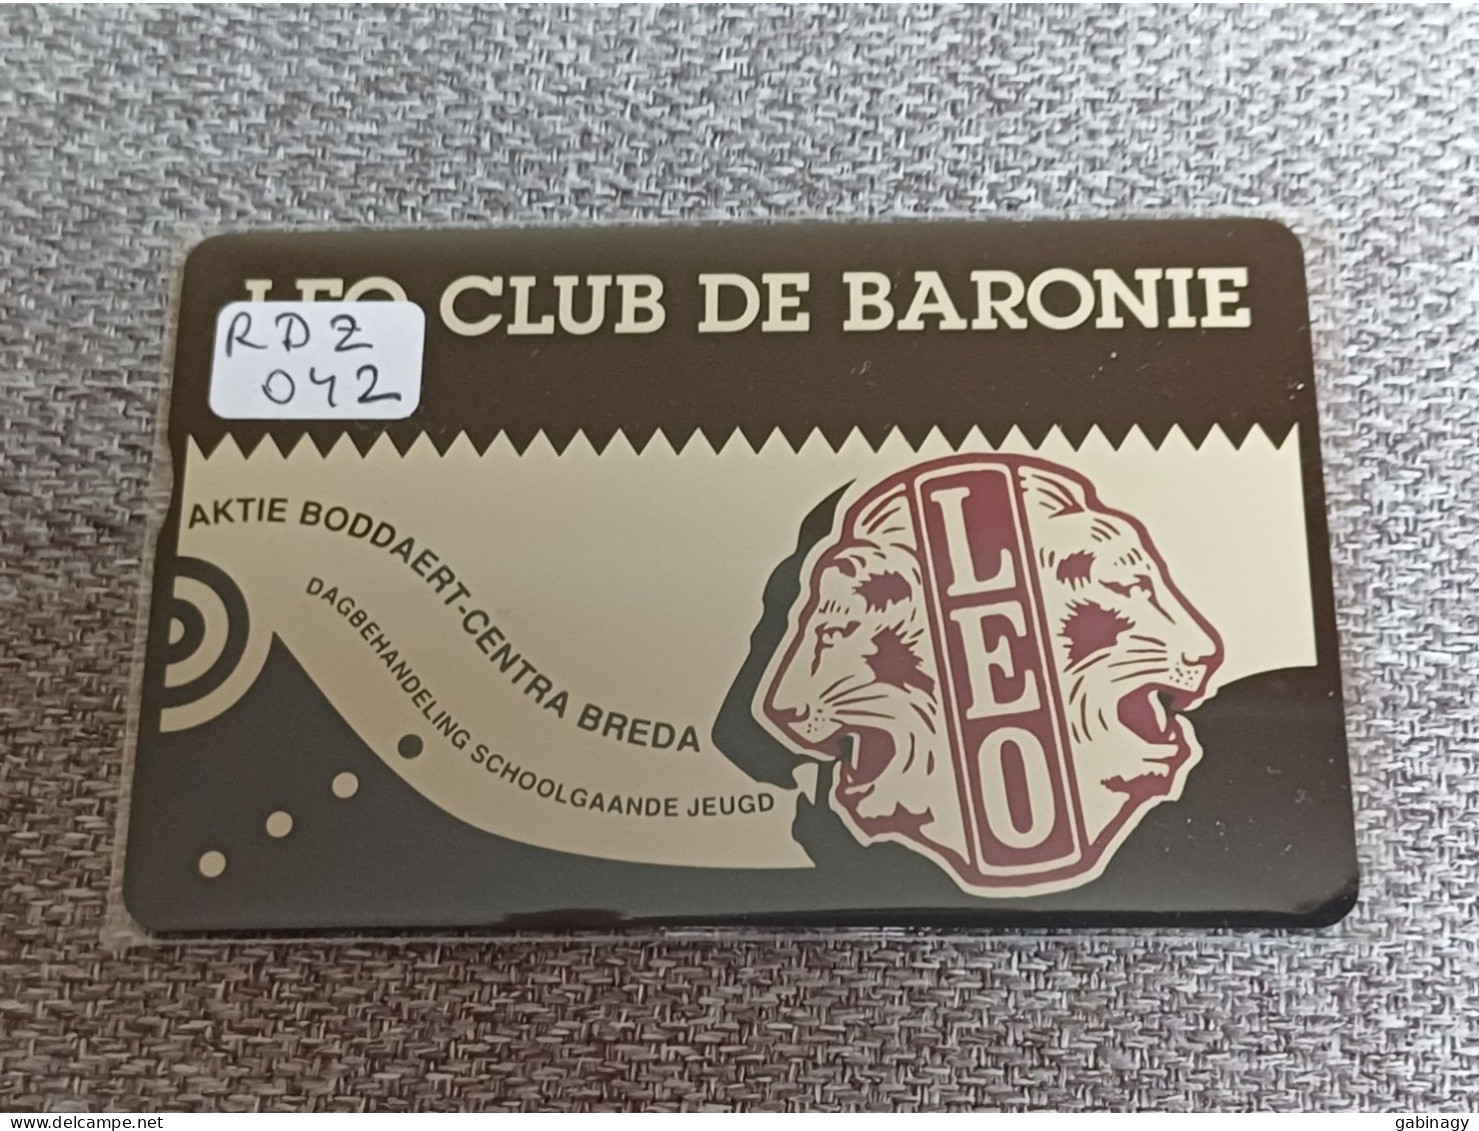 NETHERLANDS - RDZ042 - Leo Club De Baronie - 1.000 EX. - Privé